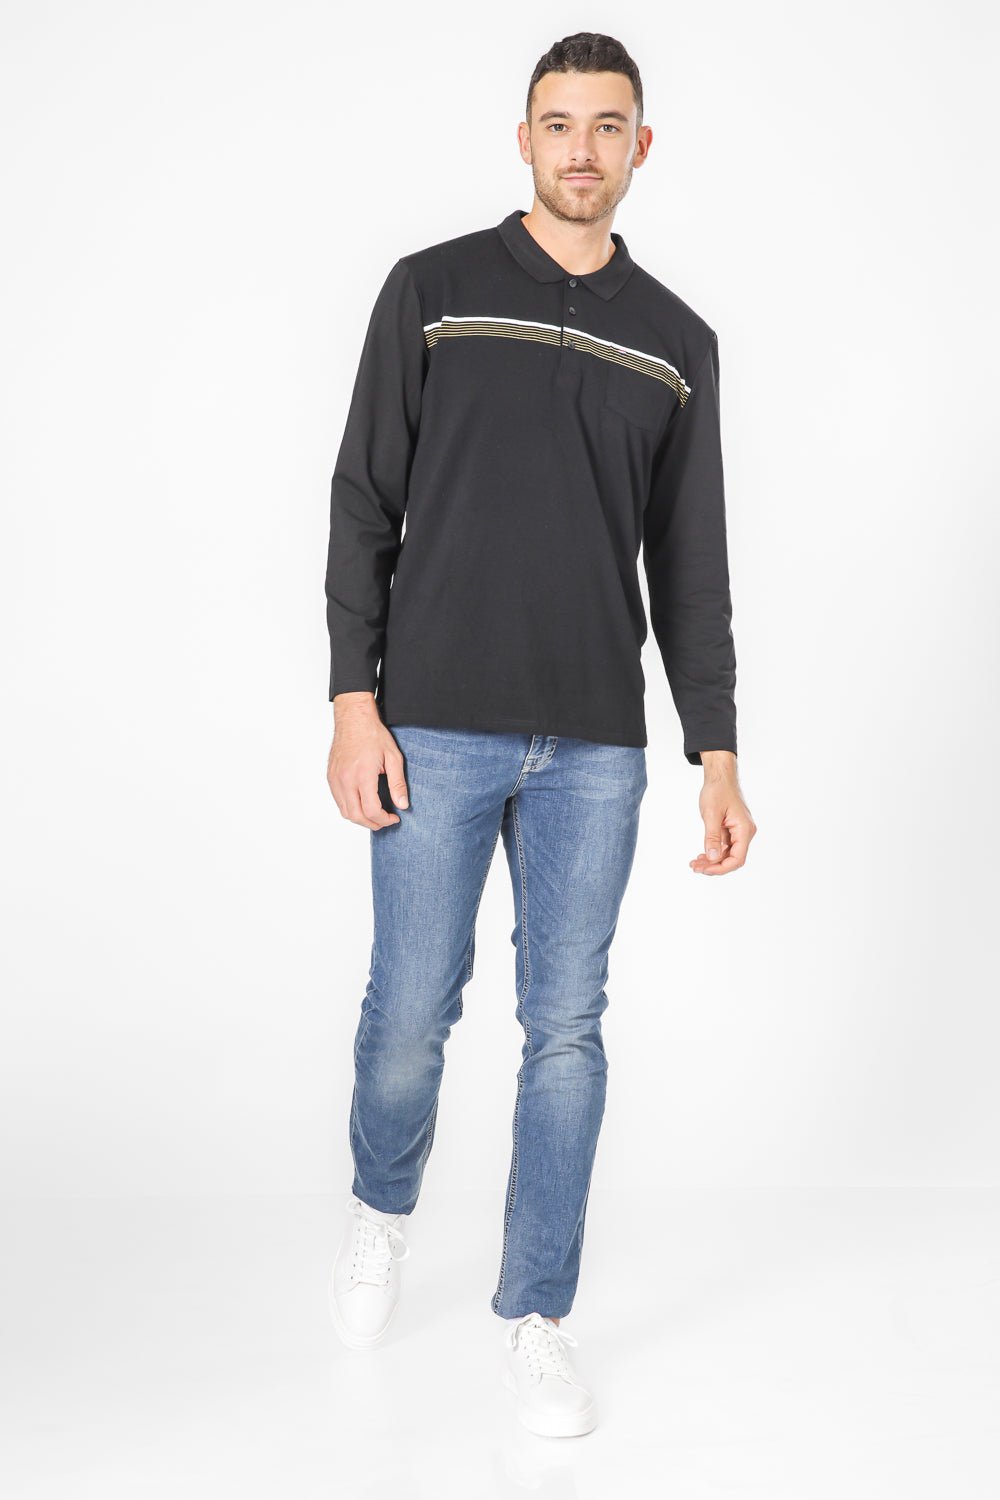 SCORCHER - חולצת פולו ארוכה בצבע שחור - MASHBIR//365